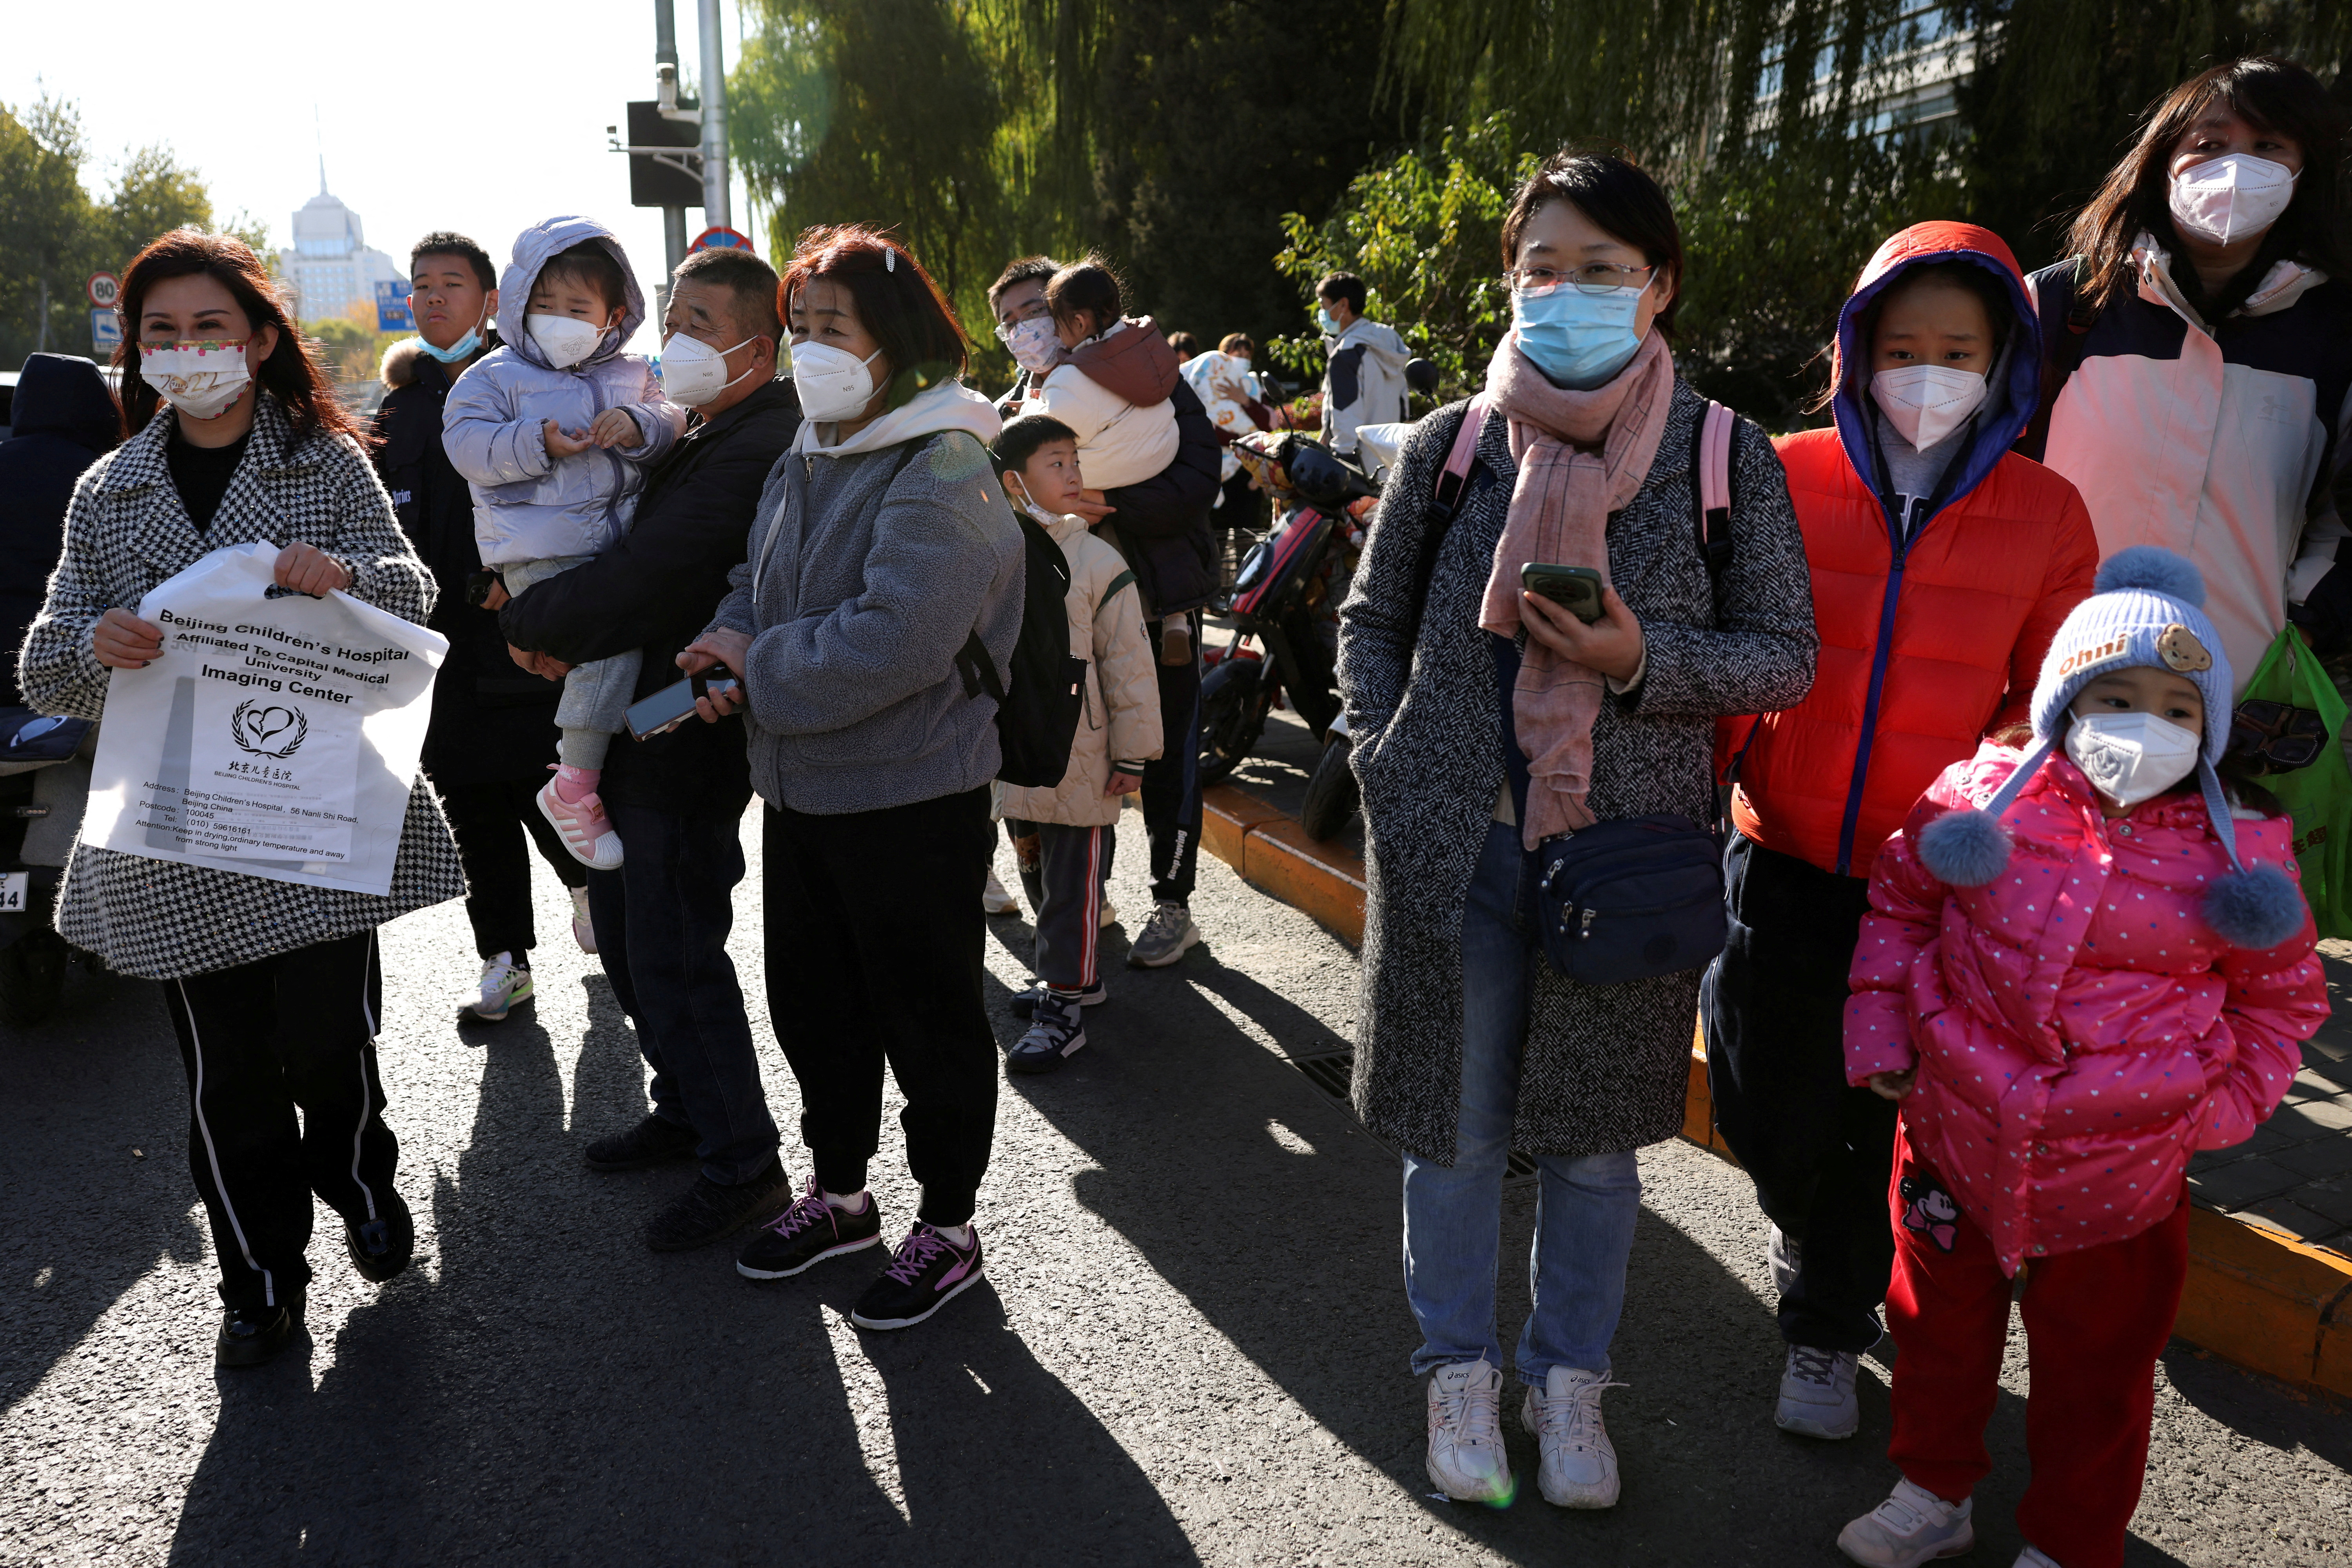 中国、発熱クリニック増設目指す 呼吸器疾患急増に対処 - ロイター (Reuters Japan)